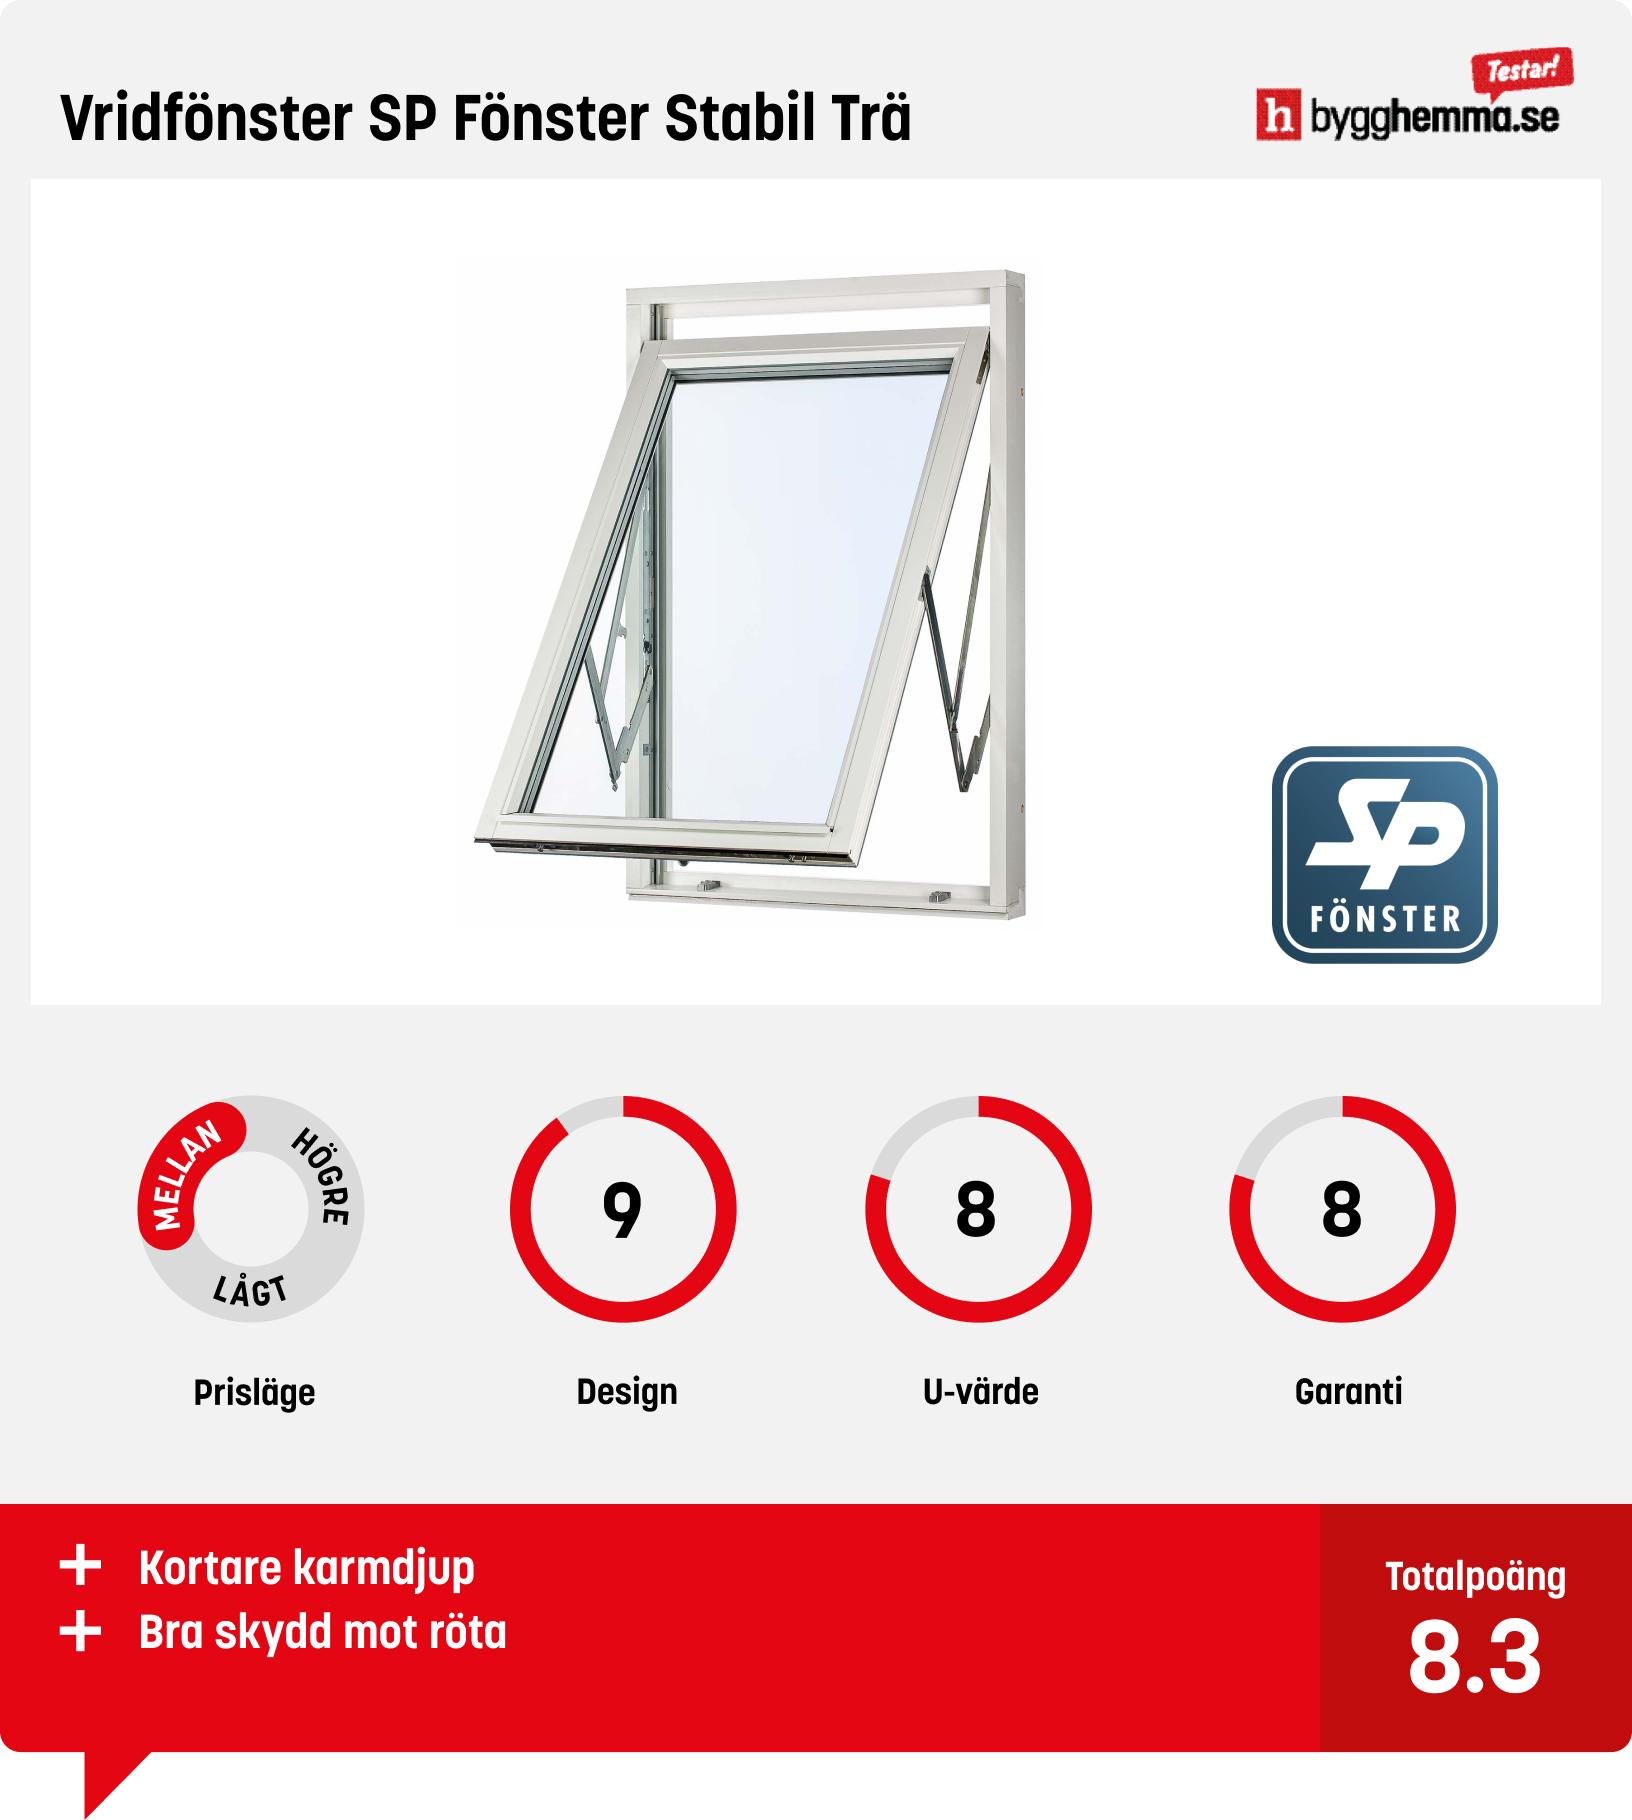 Fönster bäst i test - Vridfönster SP Fönster Stabil Trä